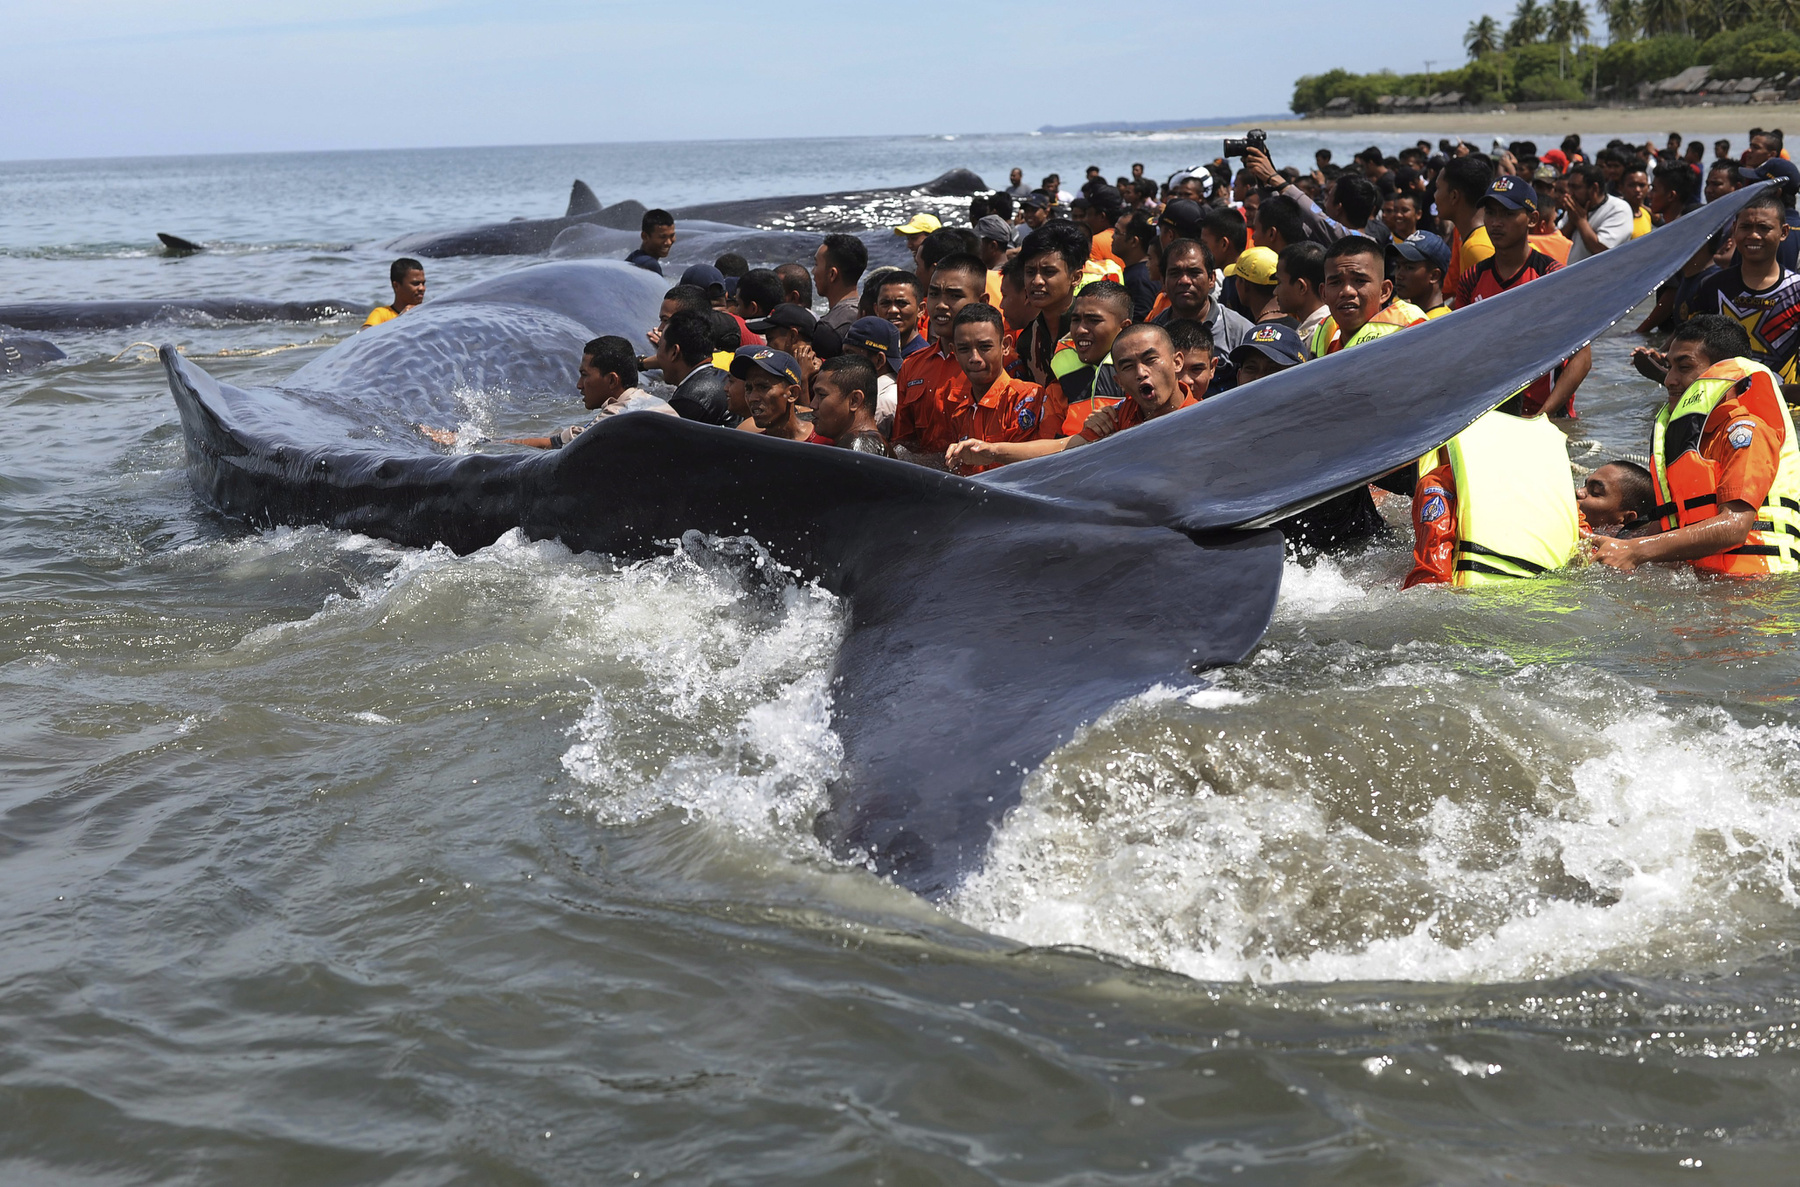 Partra vetődött óriás ámbráscetek (Physeter macrocephalus) tetemeit nézik helyibeliek a Szumátra indonéz sziget Banda Aceh városának tengerpartján 2017. november 14-én. Az előző napon kilenc ámbráscet rekedt a parton, ebből az állatvédők és helyi önkéntesek erőfeszítése ellenére négy végül elpusztult, a többi öt példányt sikerült visszajuttatni az óceánba.